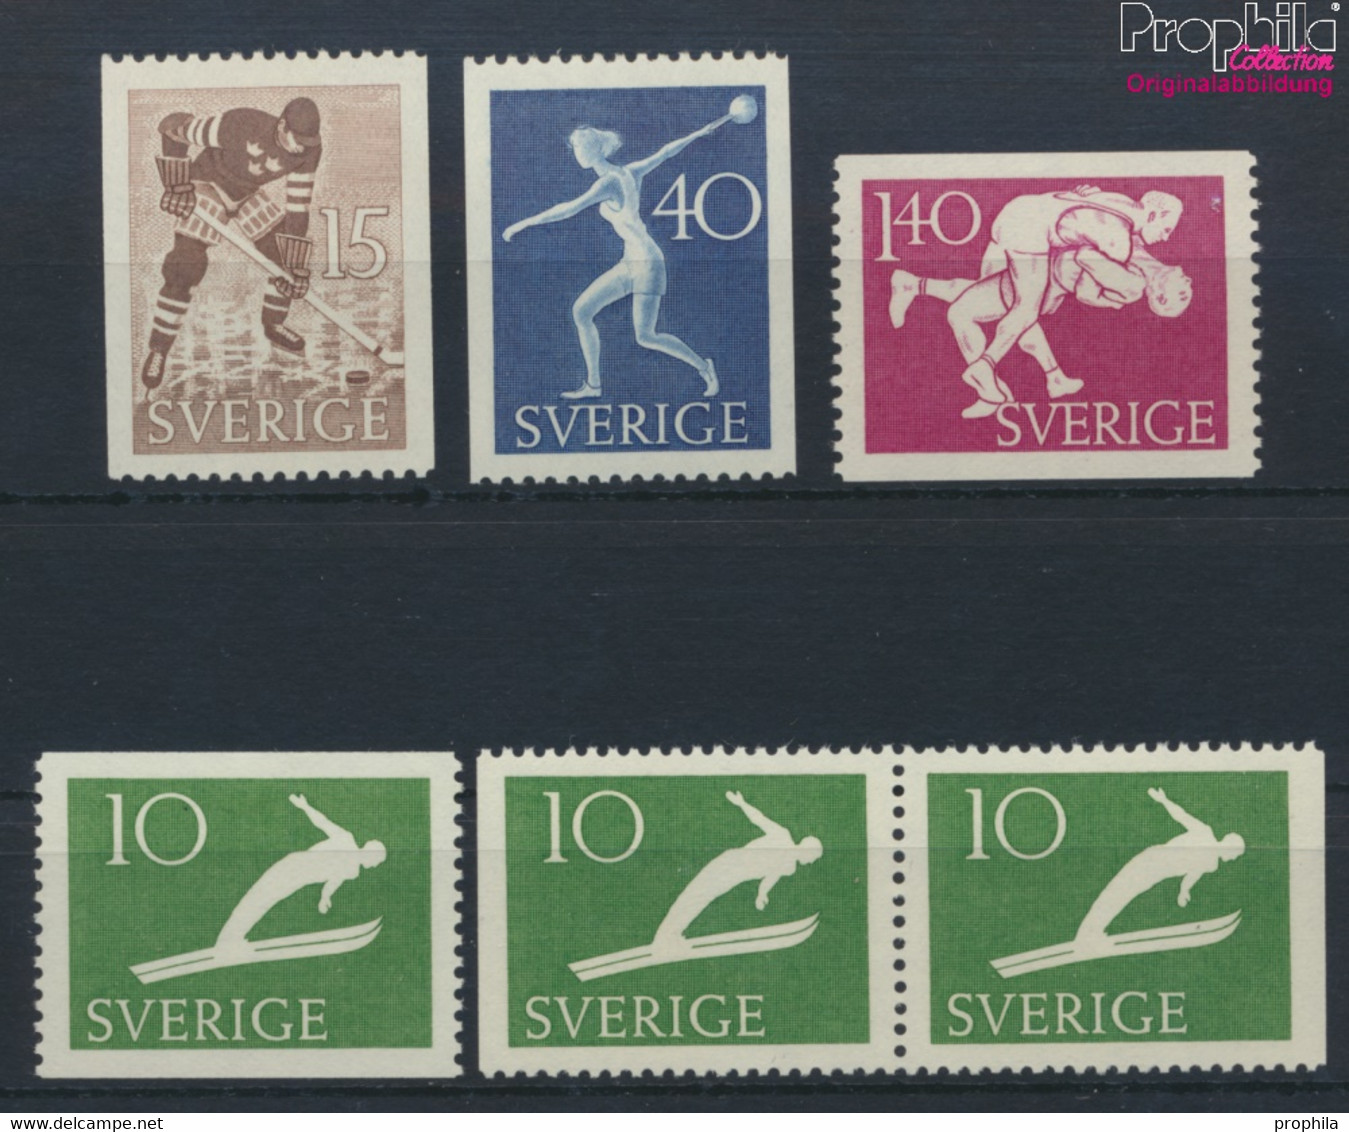 Schweden 379A,Dl,Dr,380-381C,382A (kompl.Ausg.) Postfrisch 1953 Sportvereine (9949281 - Unused Stamps